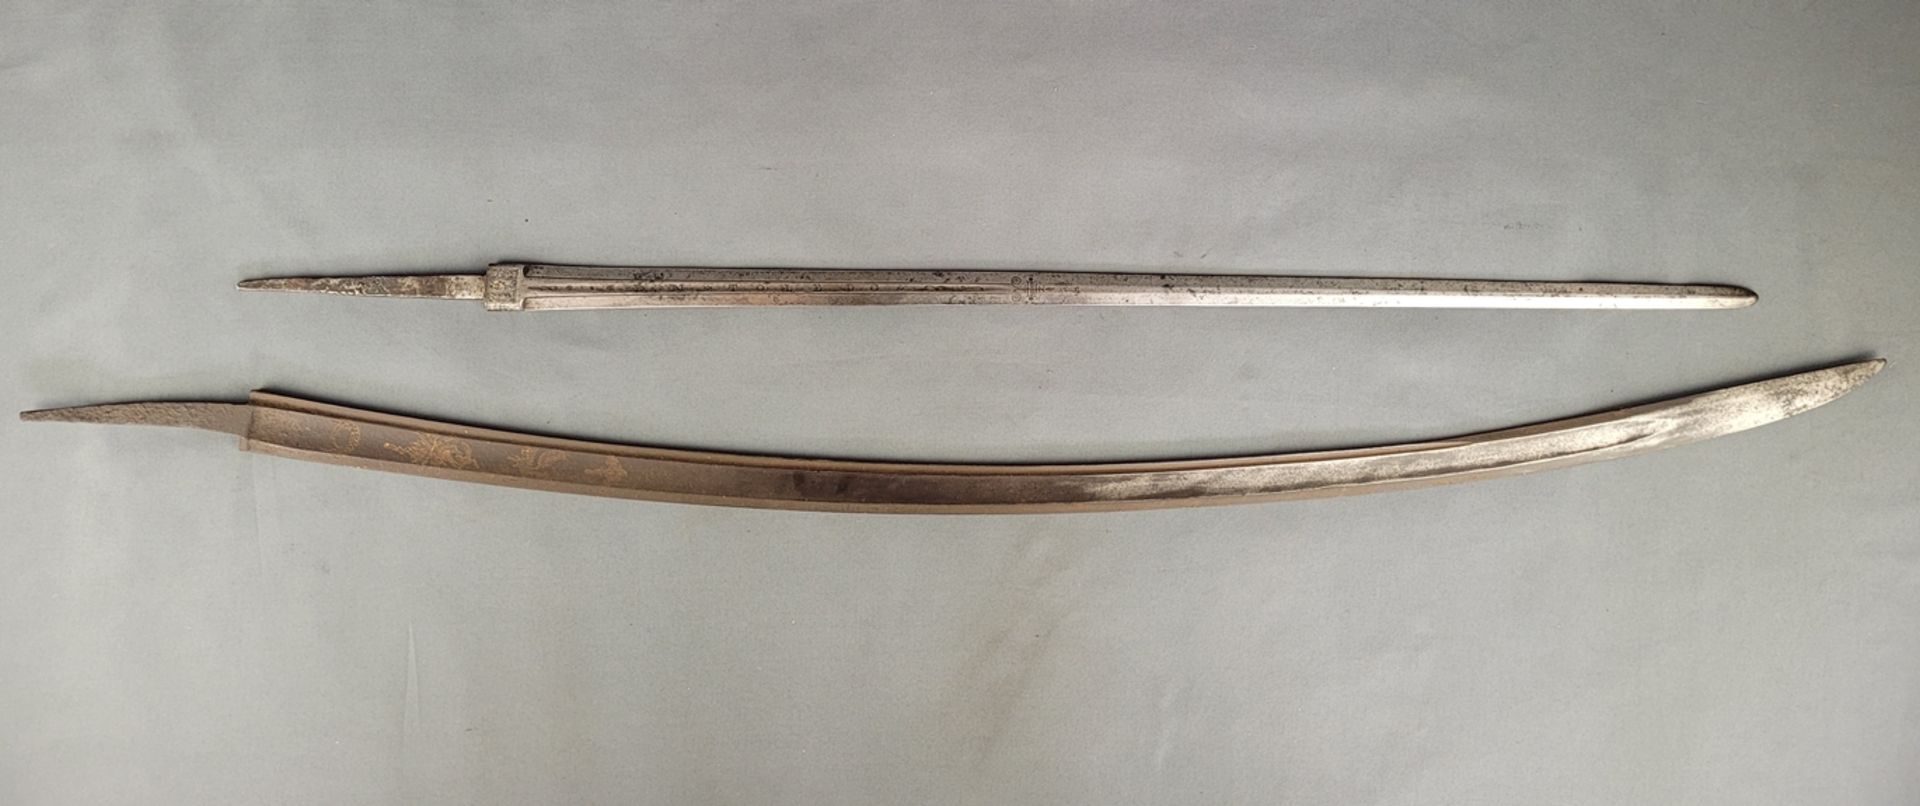 Zwei Schwertklingen, eine geschwungen, einschneidig, ziseliert mit floralem Dekor, L 97 cm, Flugros - Bild 2 aus 5